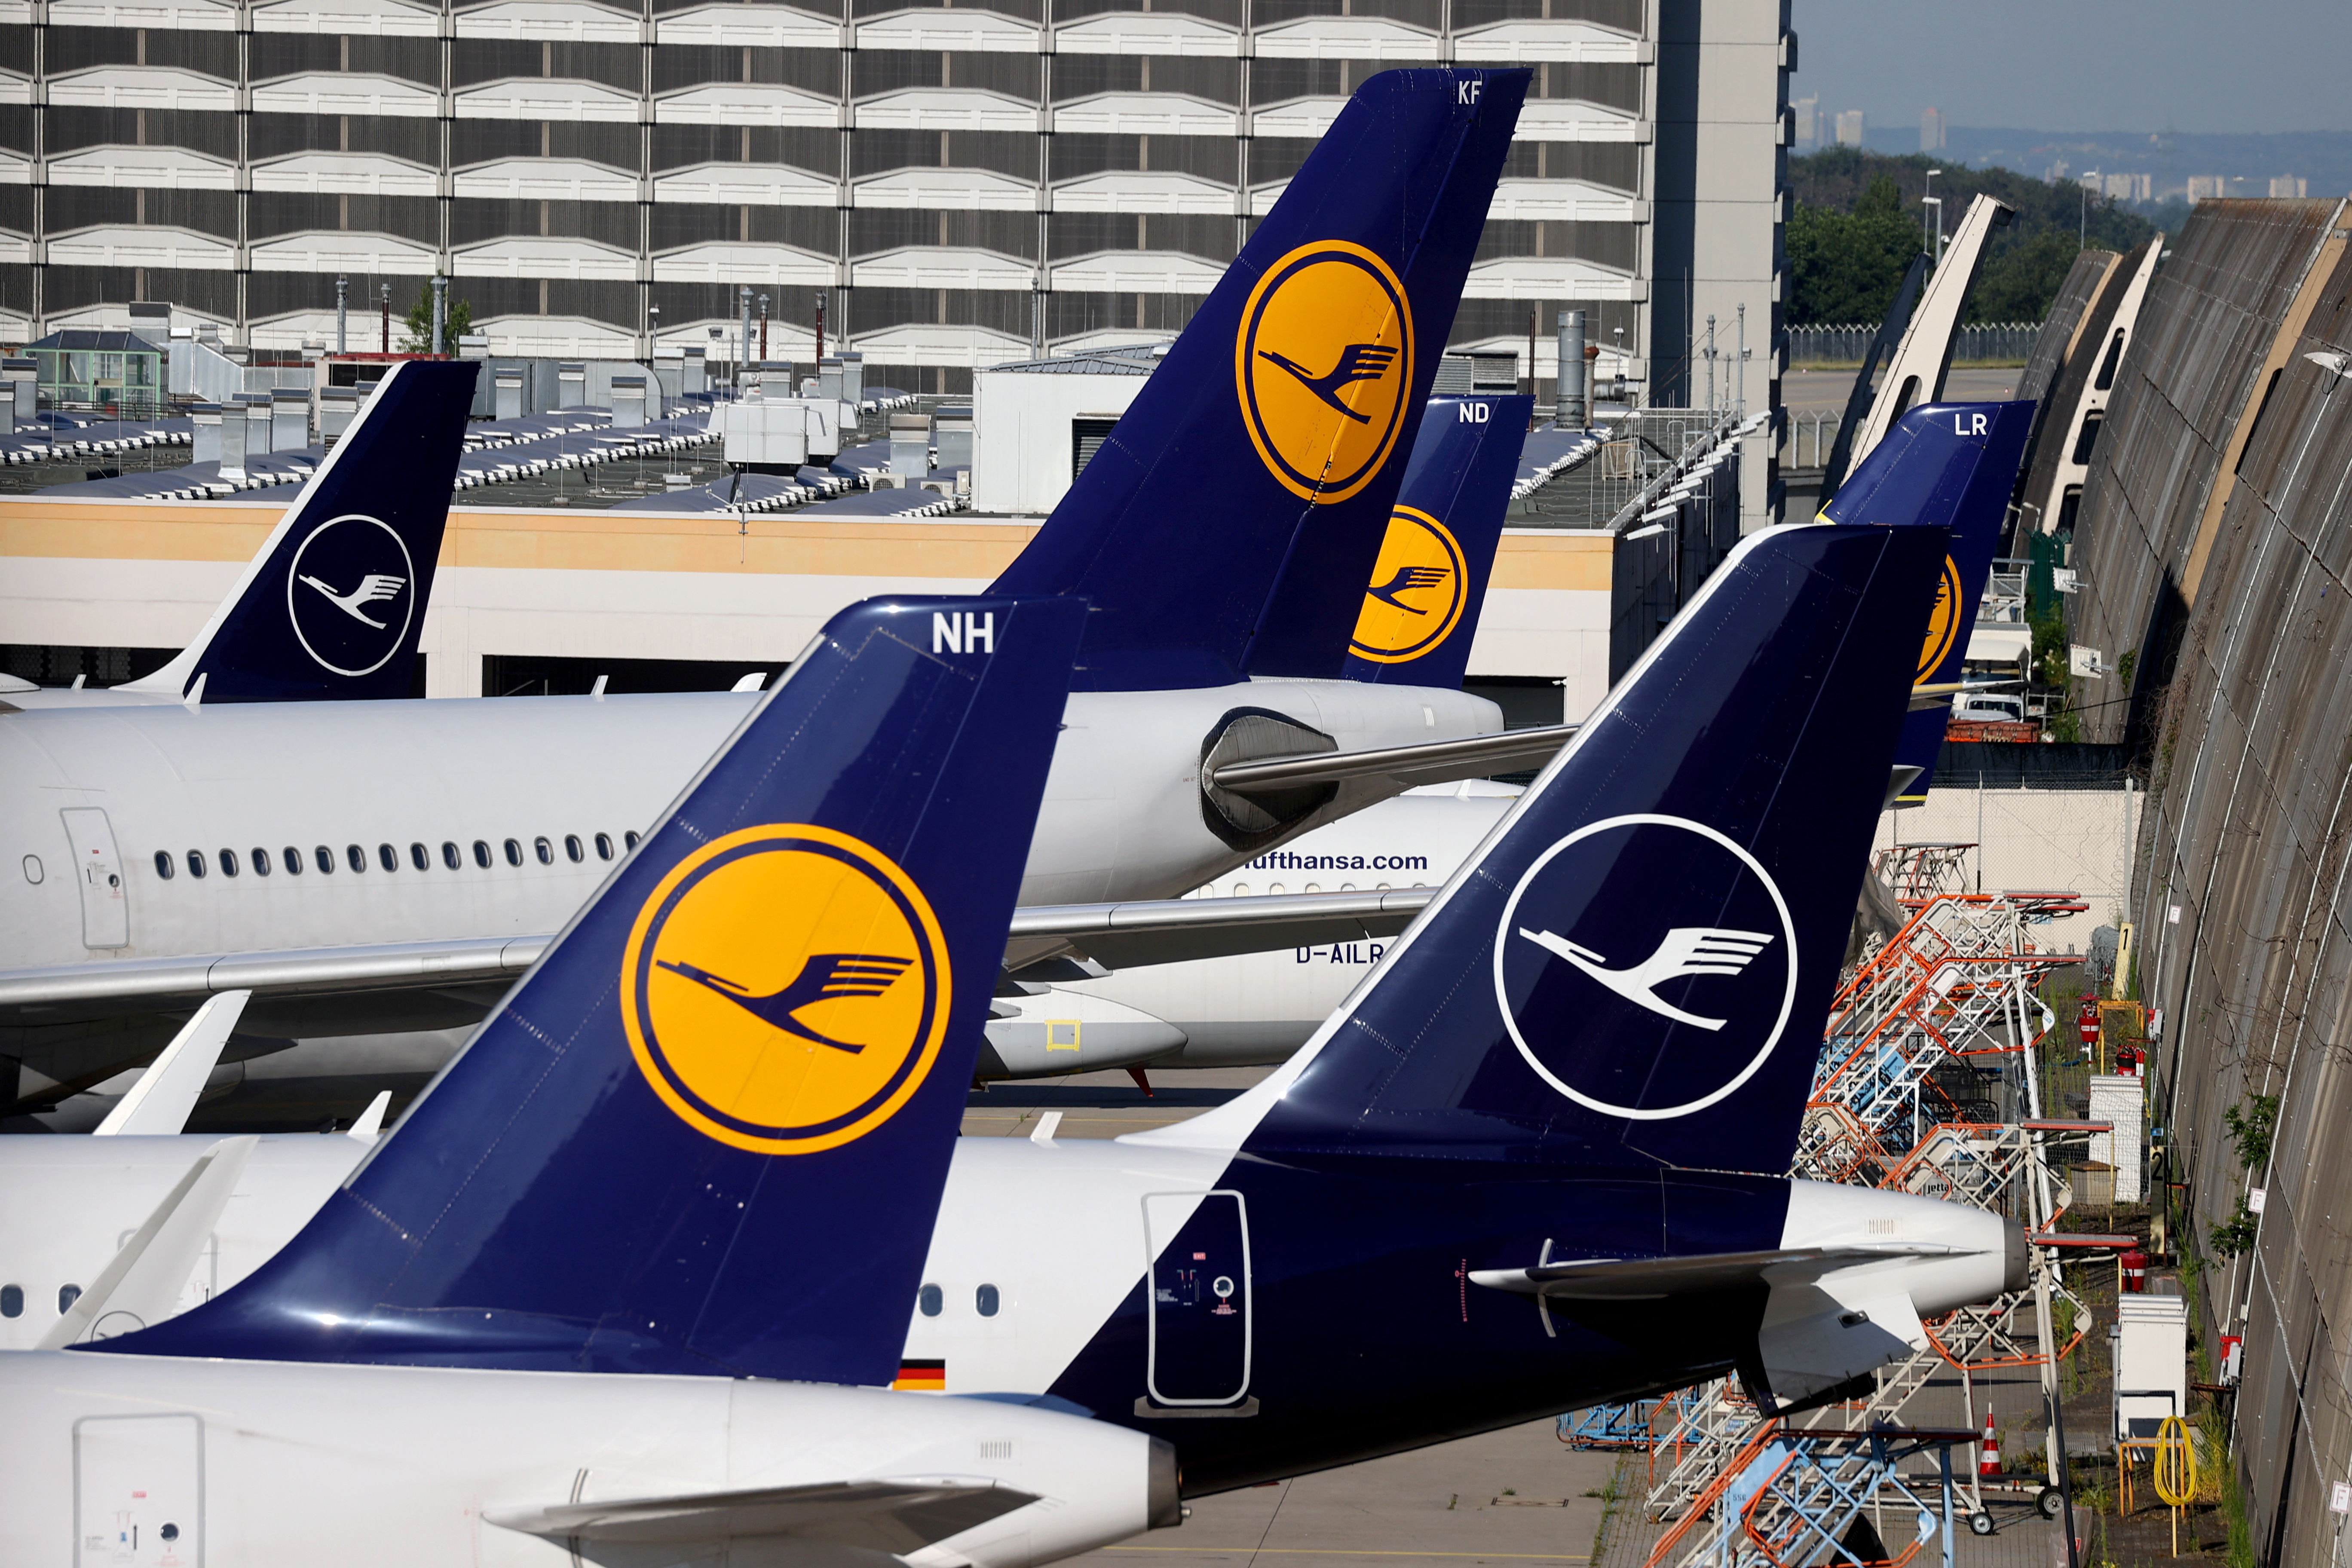 Aérien : Lufthansa souffre des retards de livraison d'avions, selon son PDG